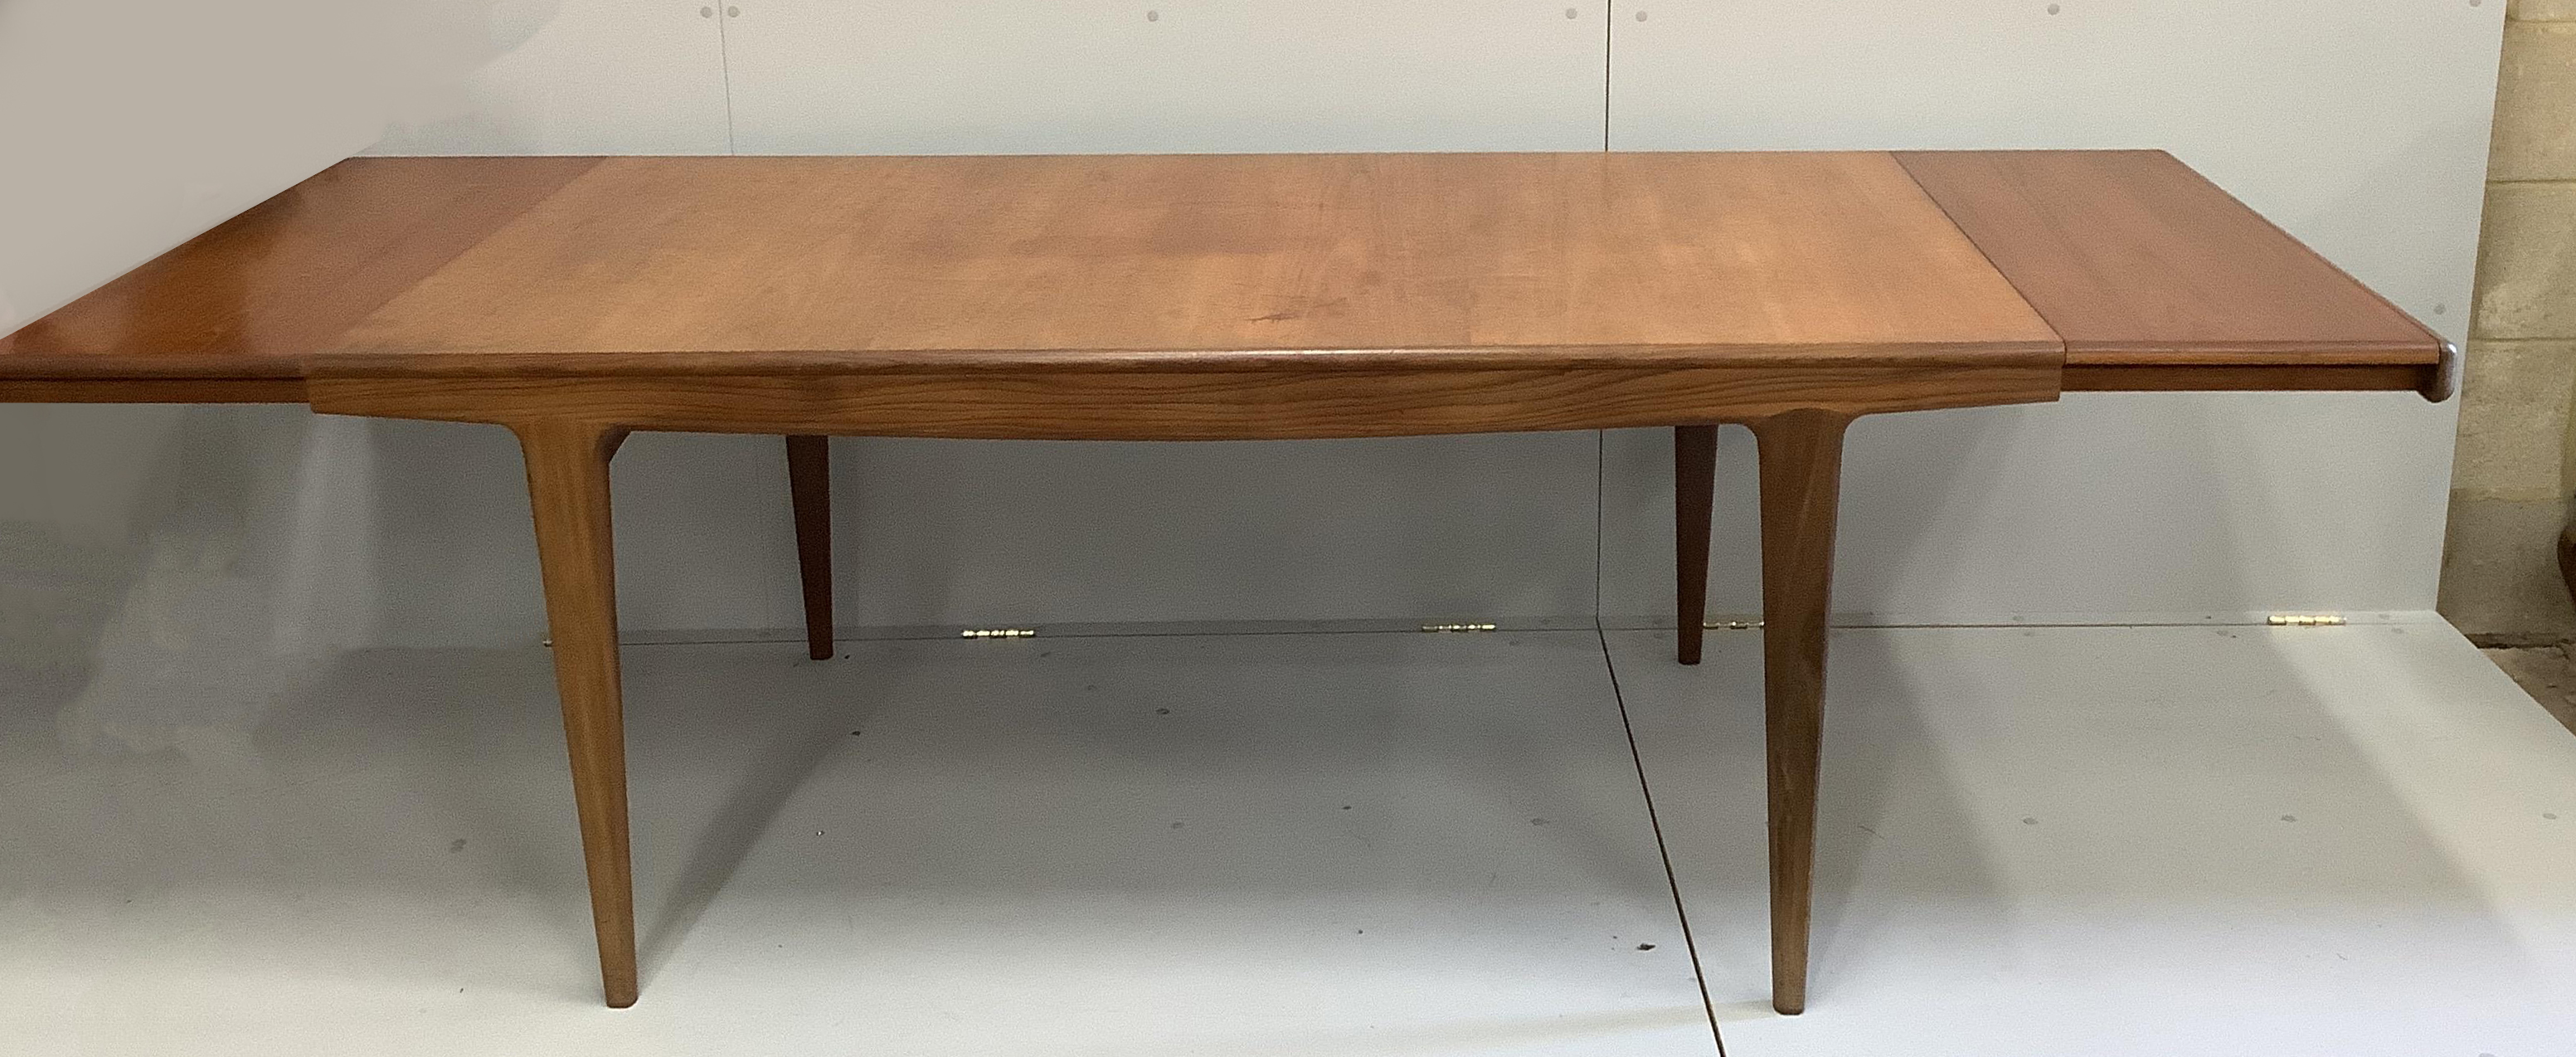 John Herbert for Younger Furniture - A rectangular teak extending dining table, 244cm extended, width 94cm, height 73cm